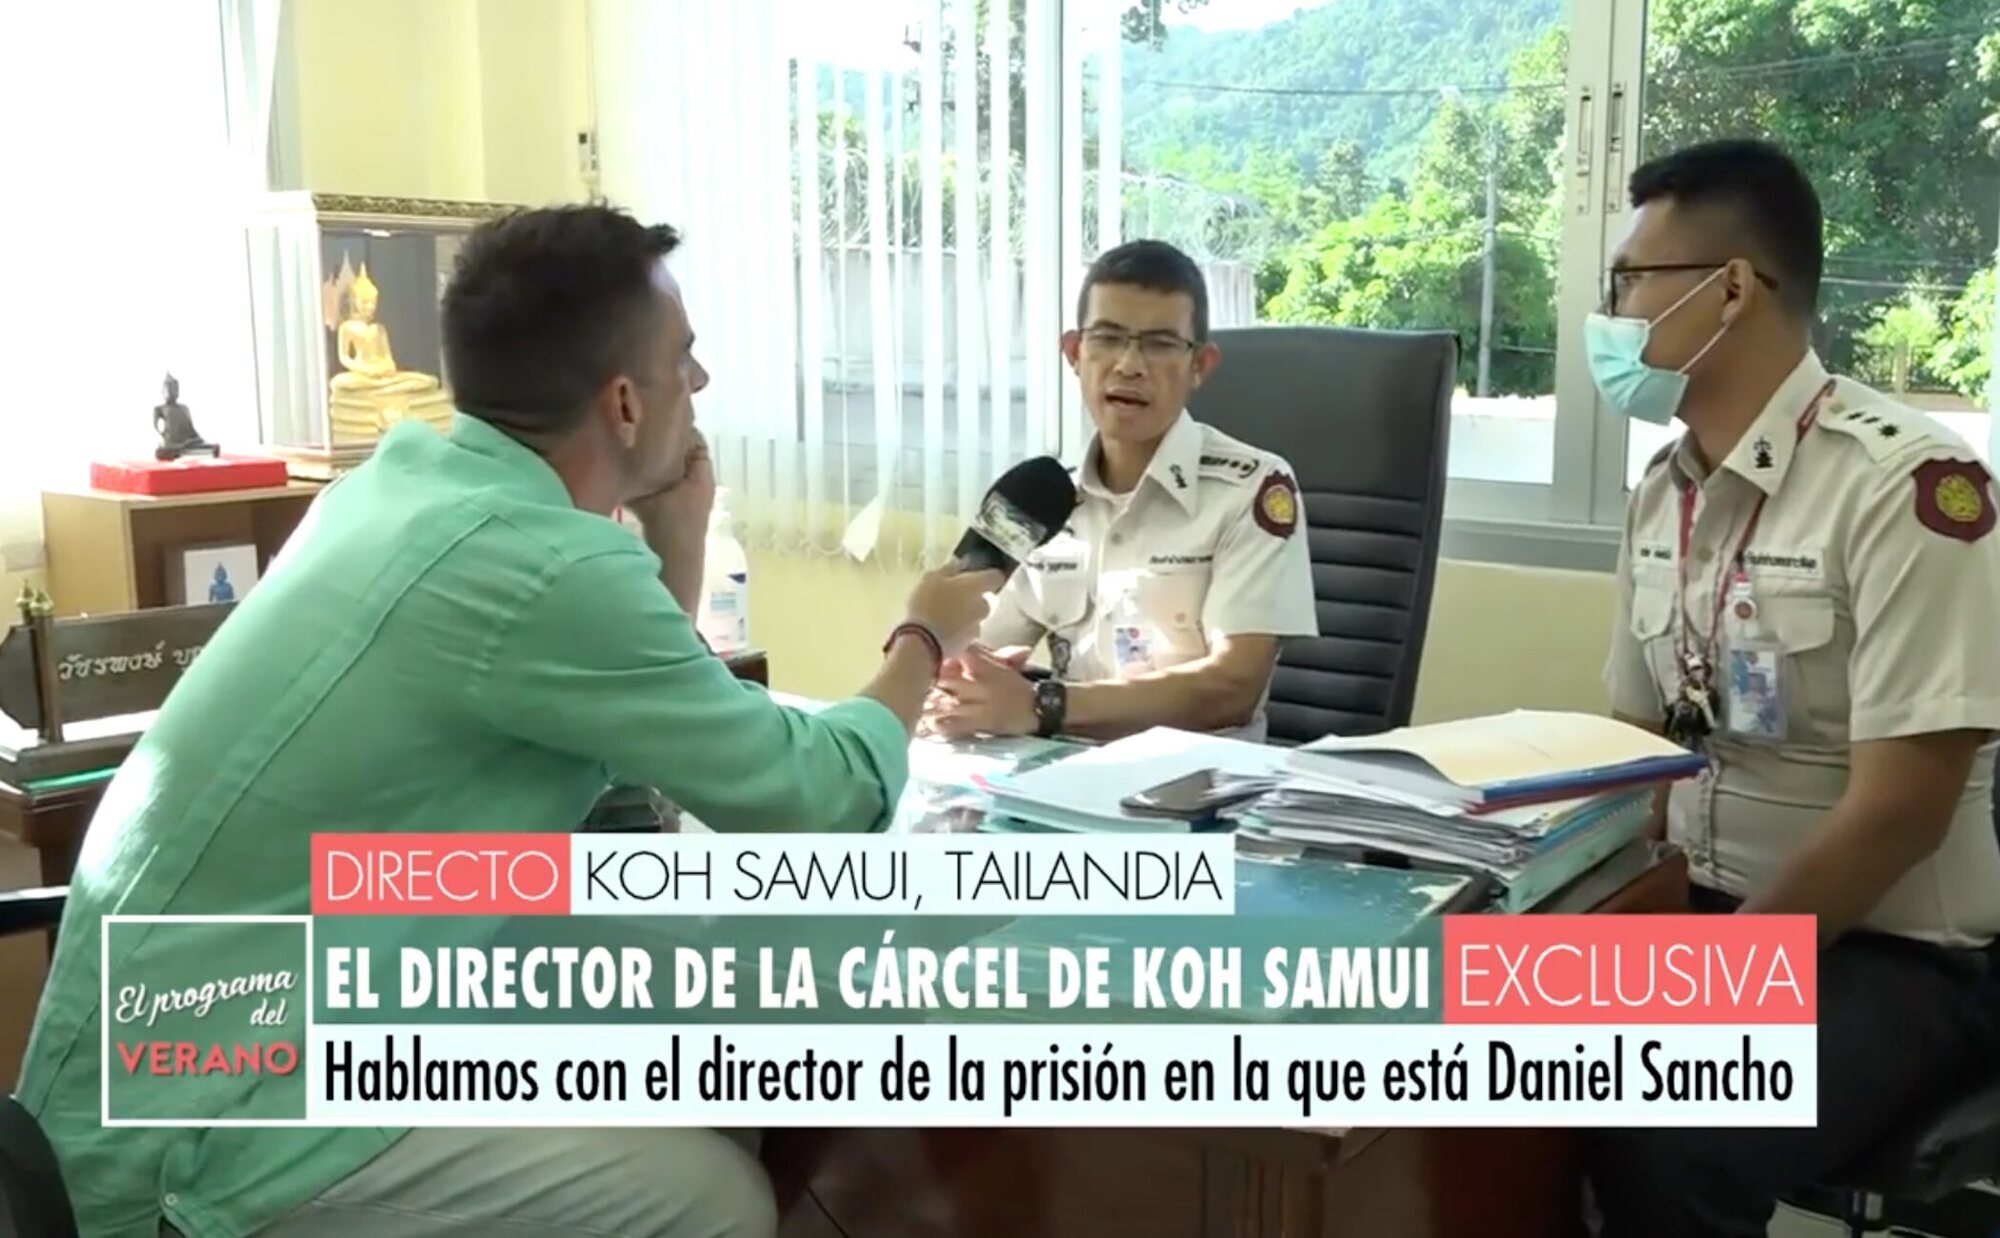 El director de la prisión en la que está Daniel Sancho habla en directo para 'El programa del verano': así se encuentra